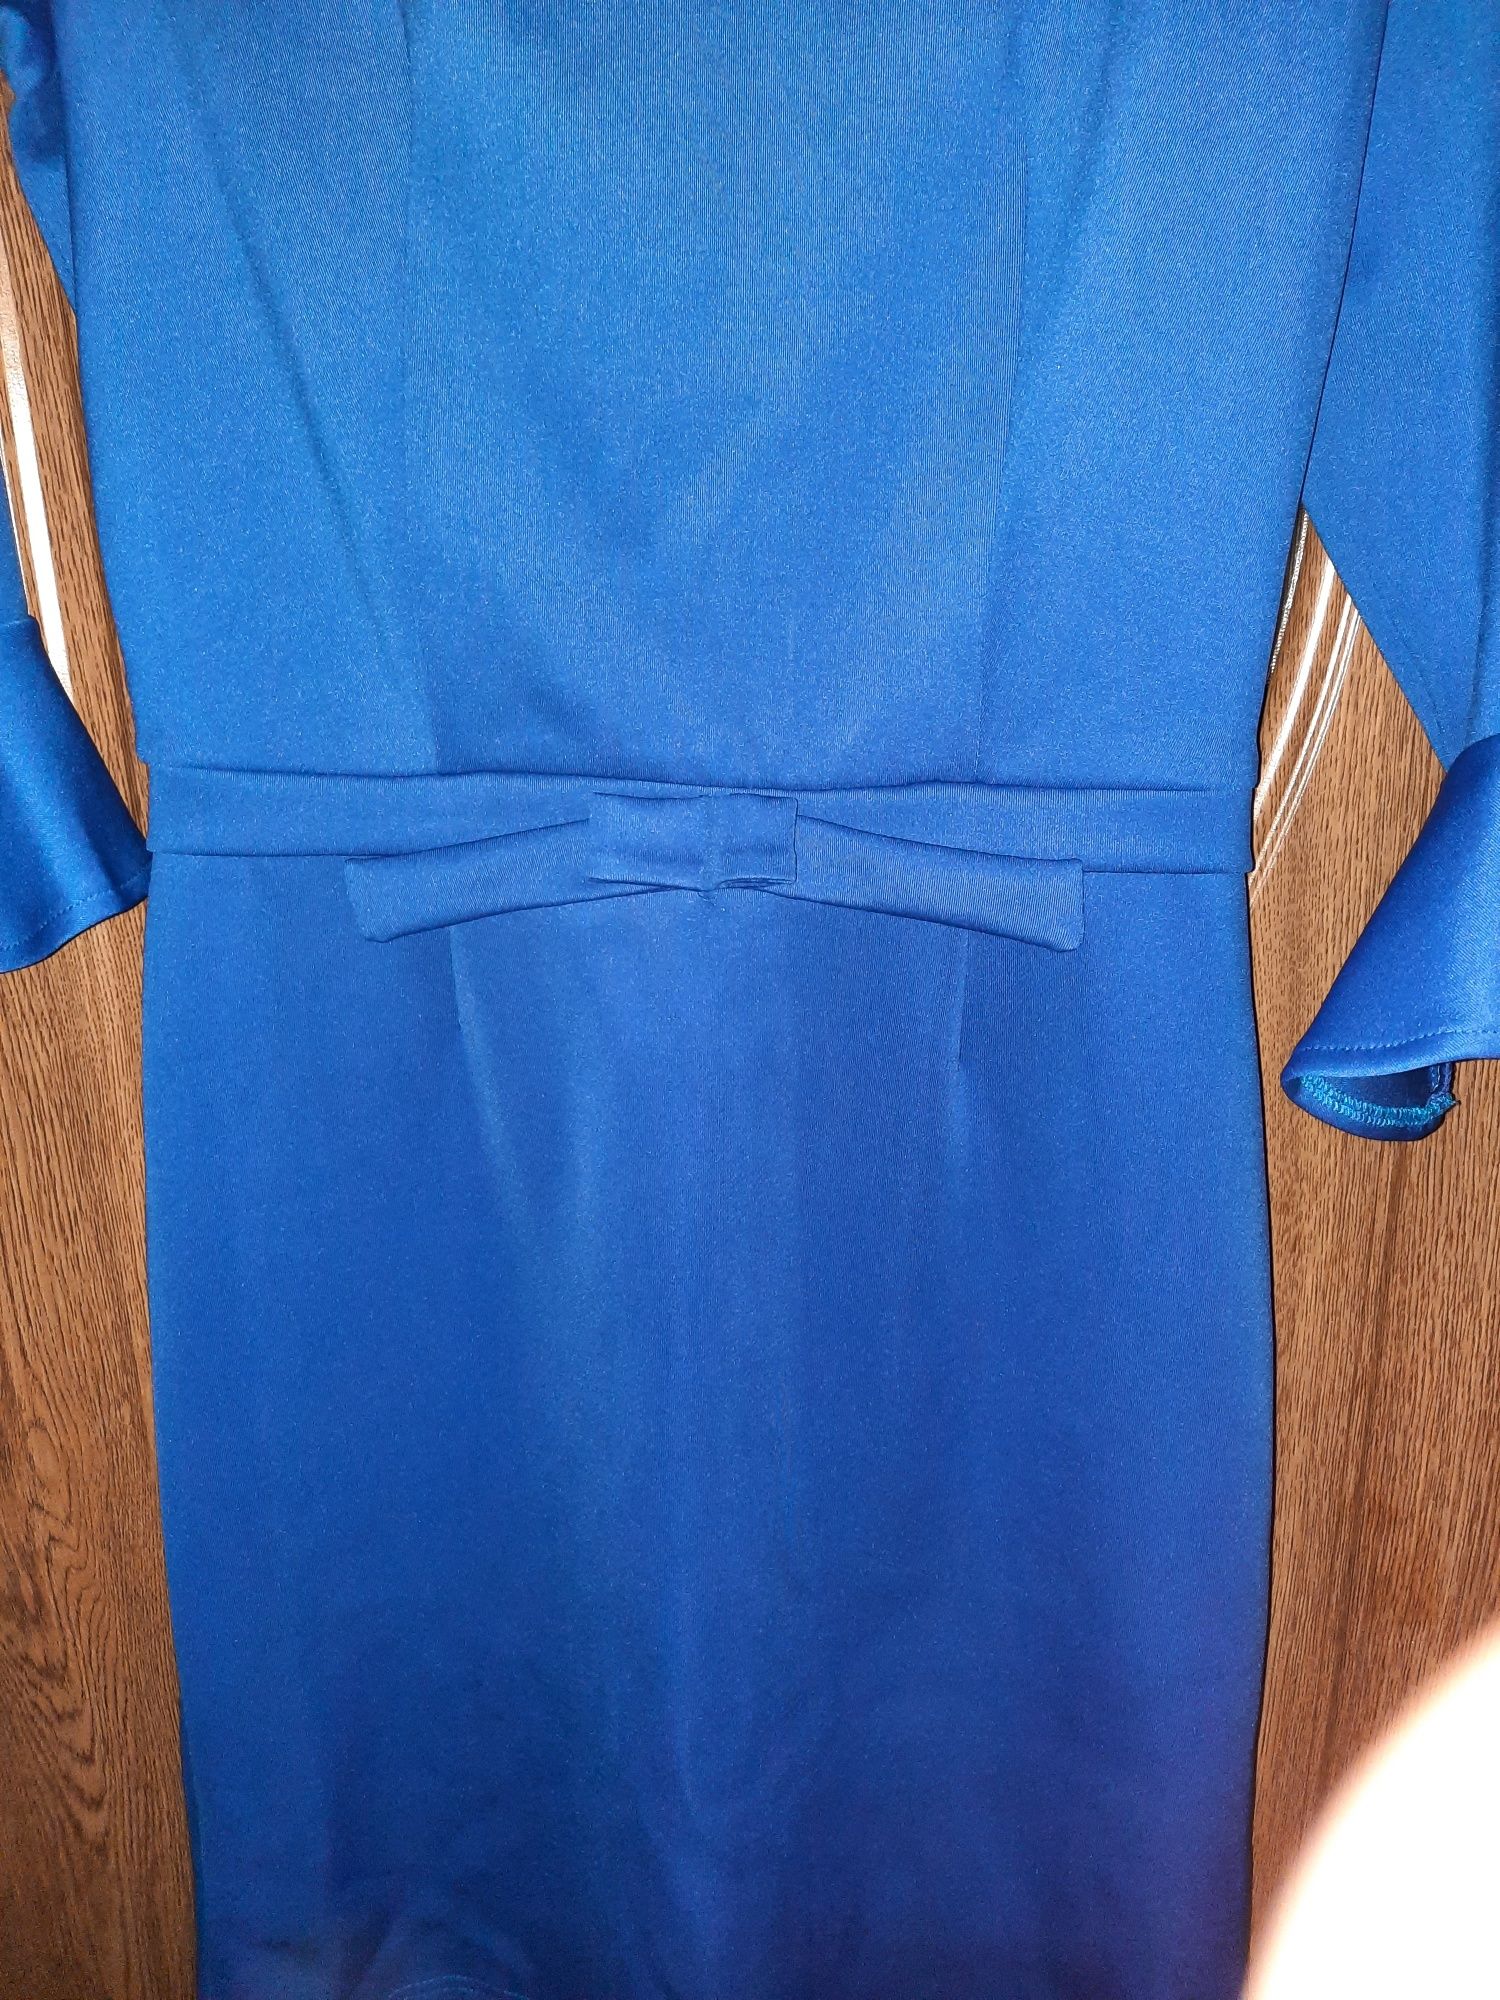 Vand rochie albastra